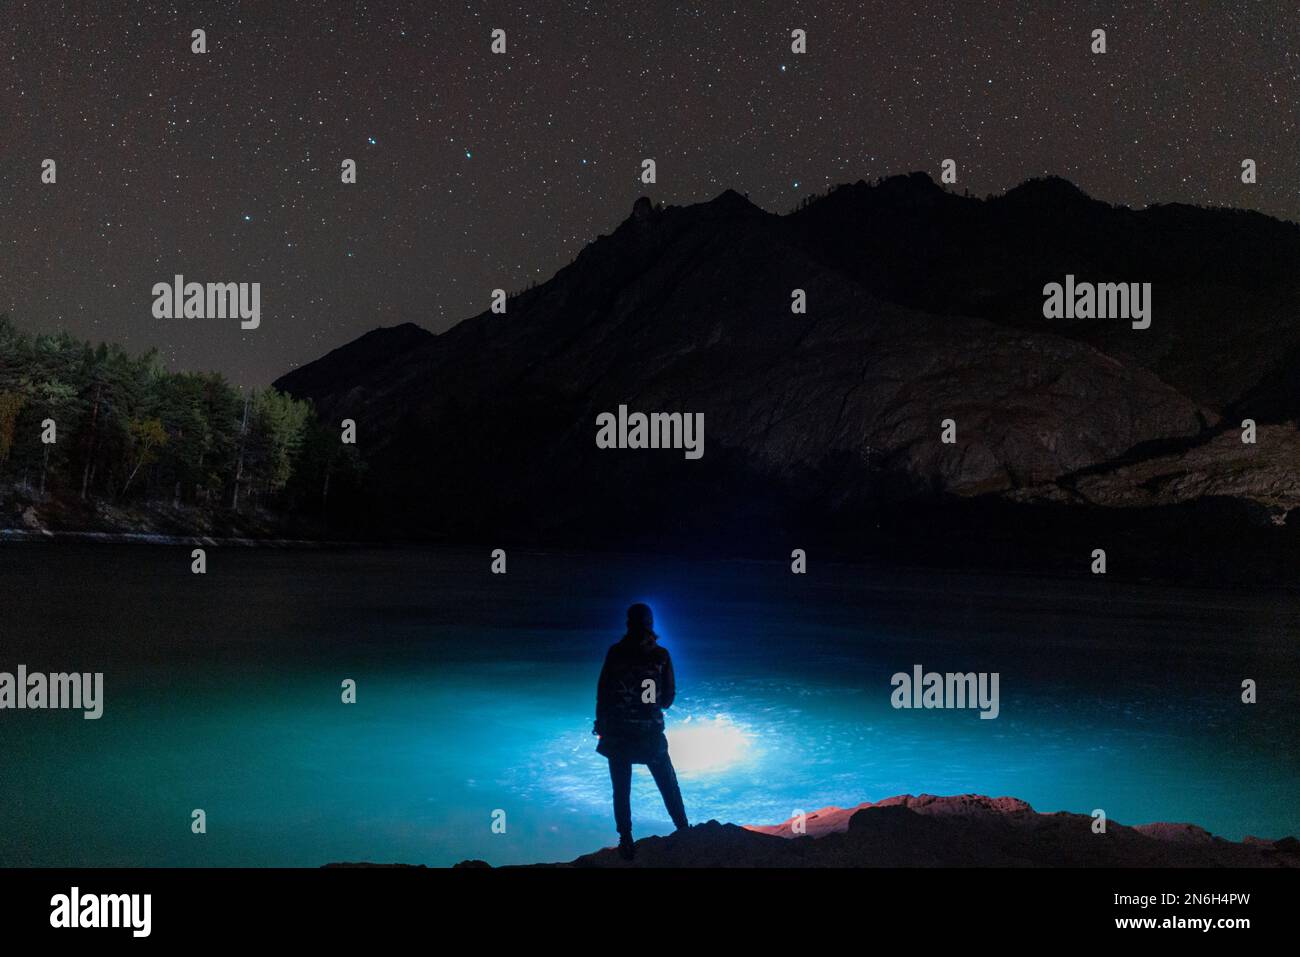 La silhouette di una ragazza pescatrice con una lanterna di notte al buio si erge con una canna da pesca sulla riva del fiume sotto una roccia con stelle ad Altai Foto Stock